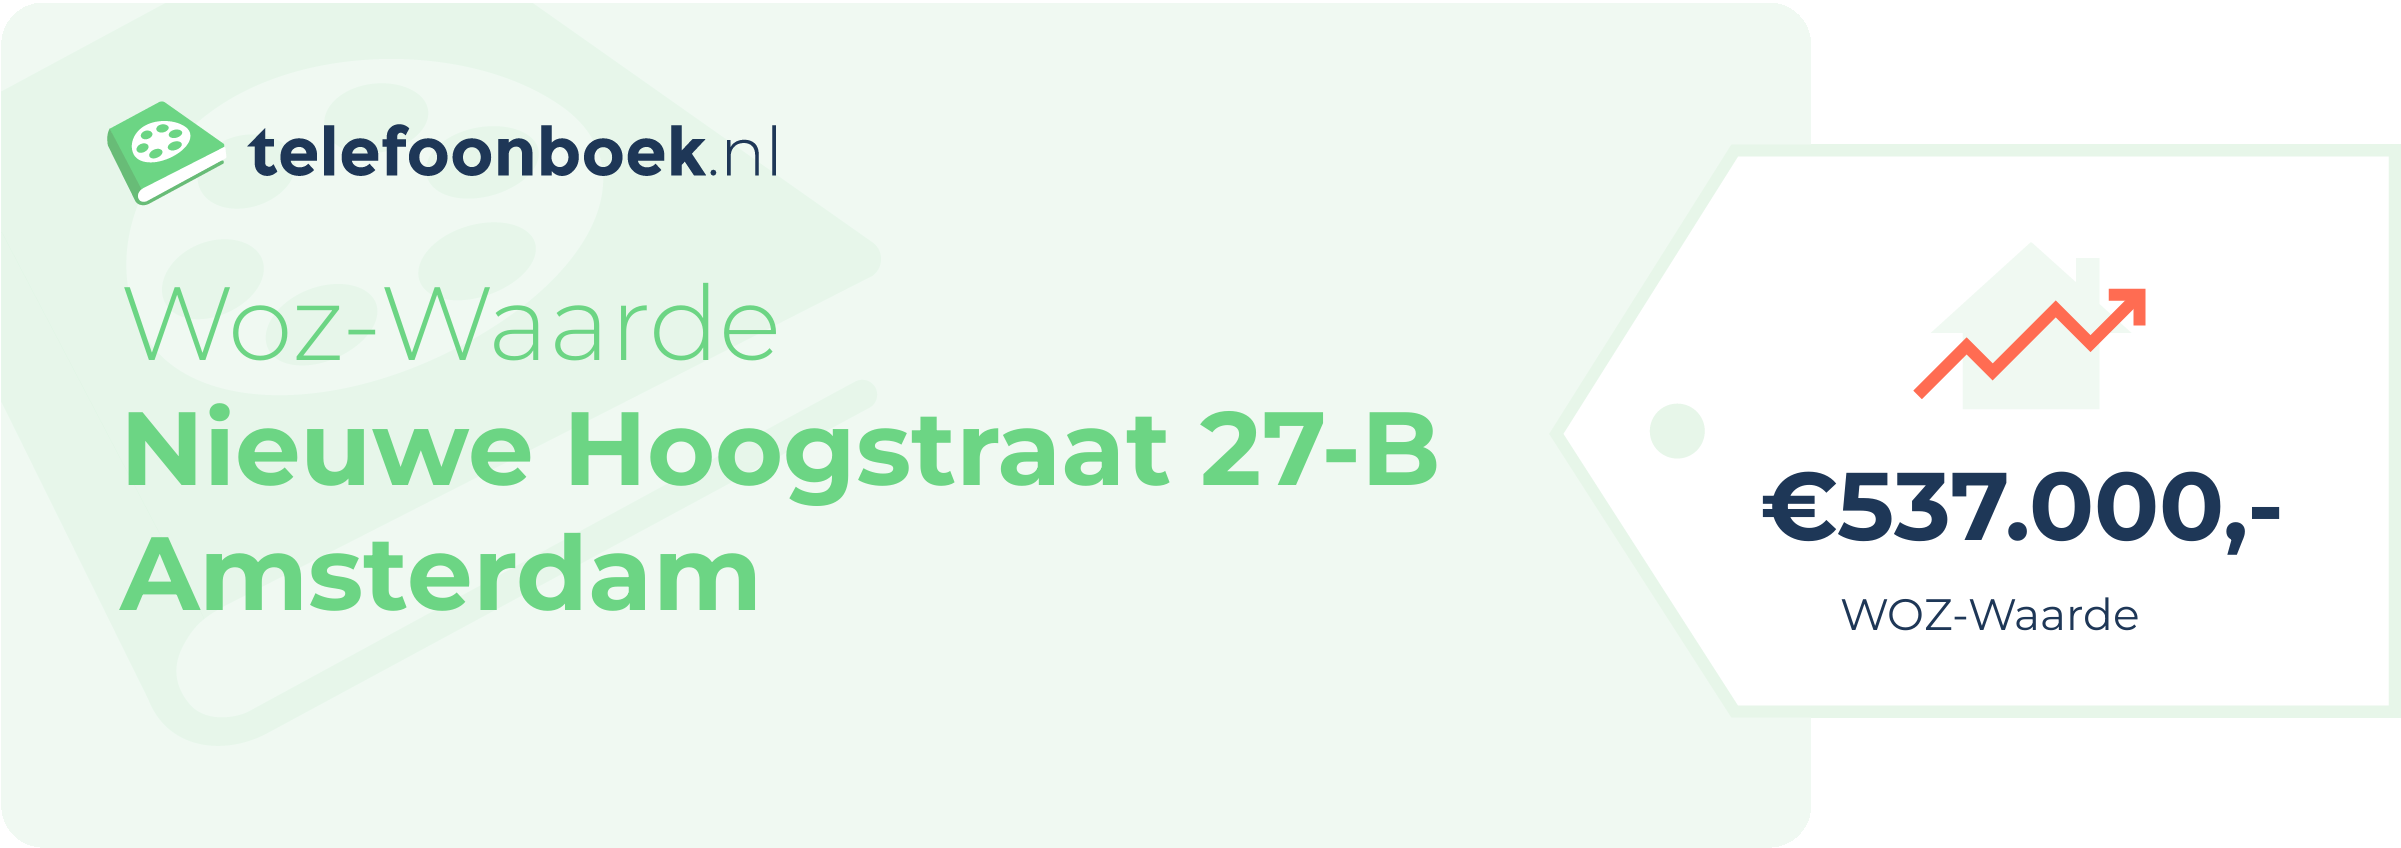 WOZ-waarde Nieuwe Hoogstraat 27-B Amsterdam